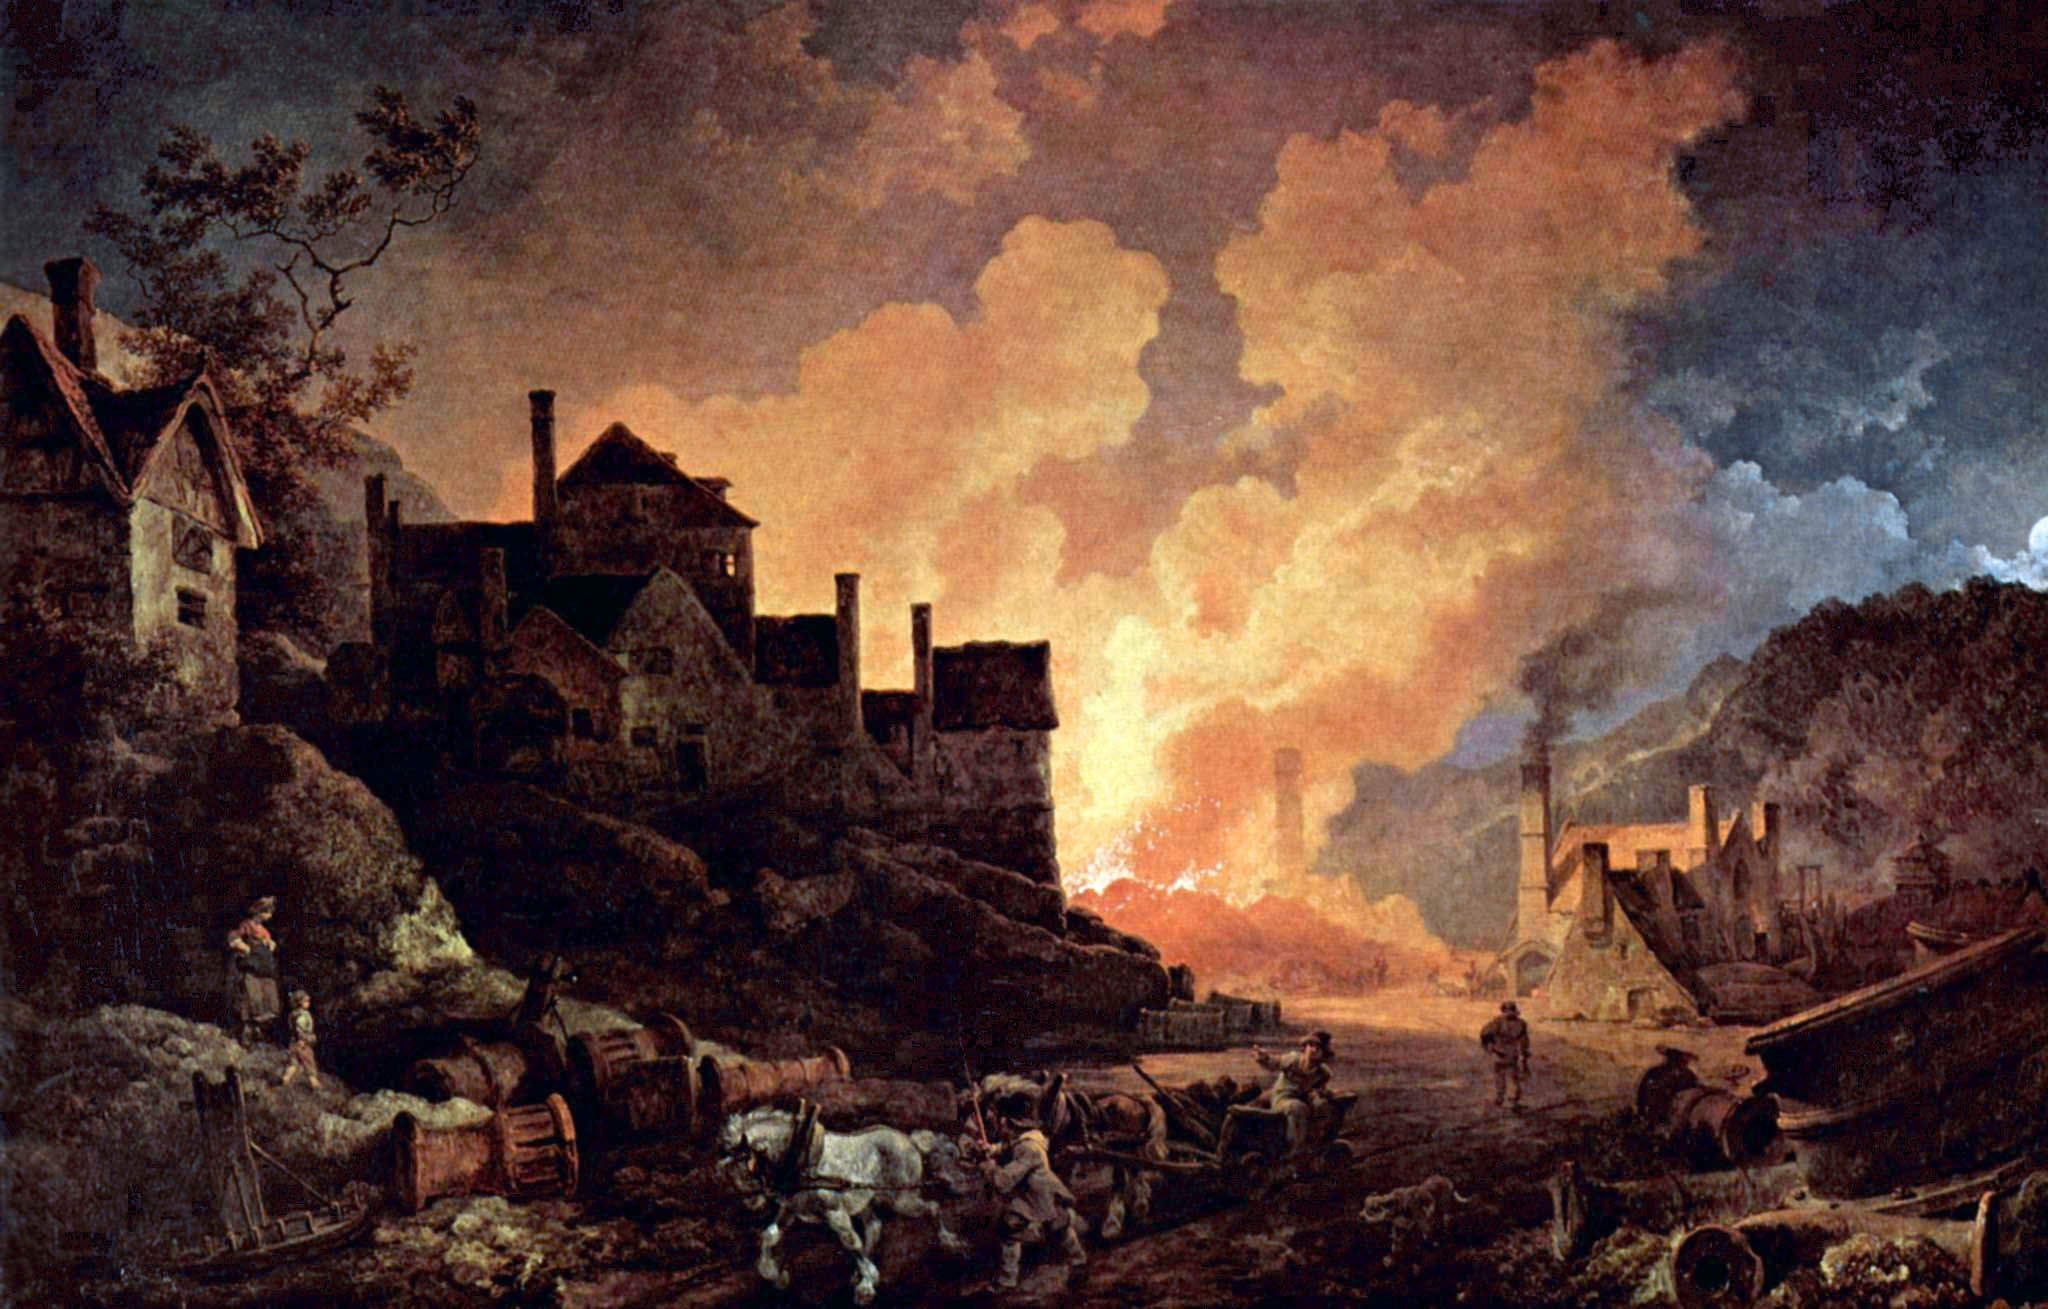 Pintura al óleo en la que se representa al poblado de Coalbrookdale (Inglaterra), considerado una de las cunas de la Revolución Industrial. Fue realizada por el artista Philip James de Loutherbourg en 1801